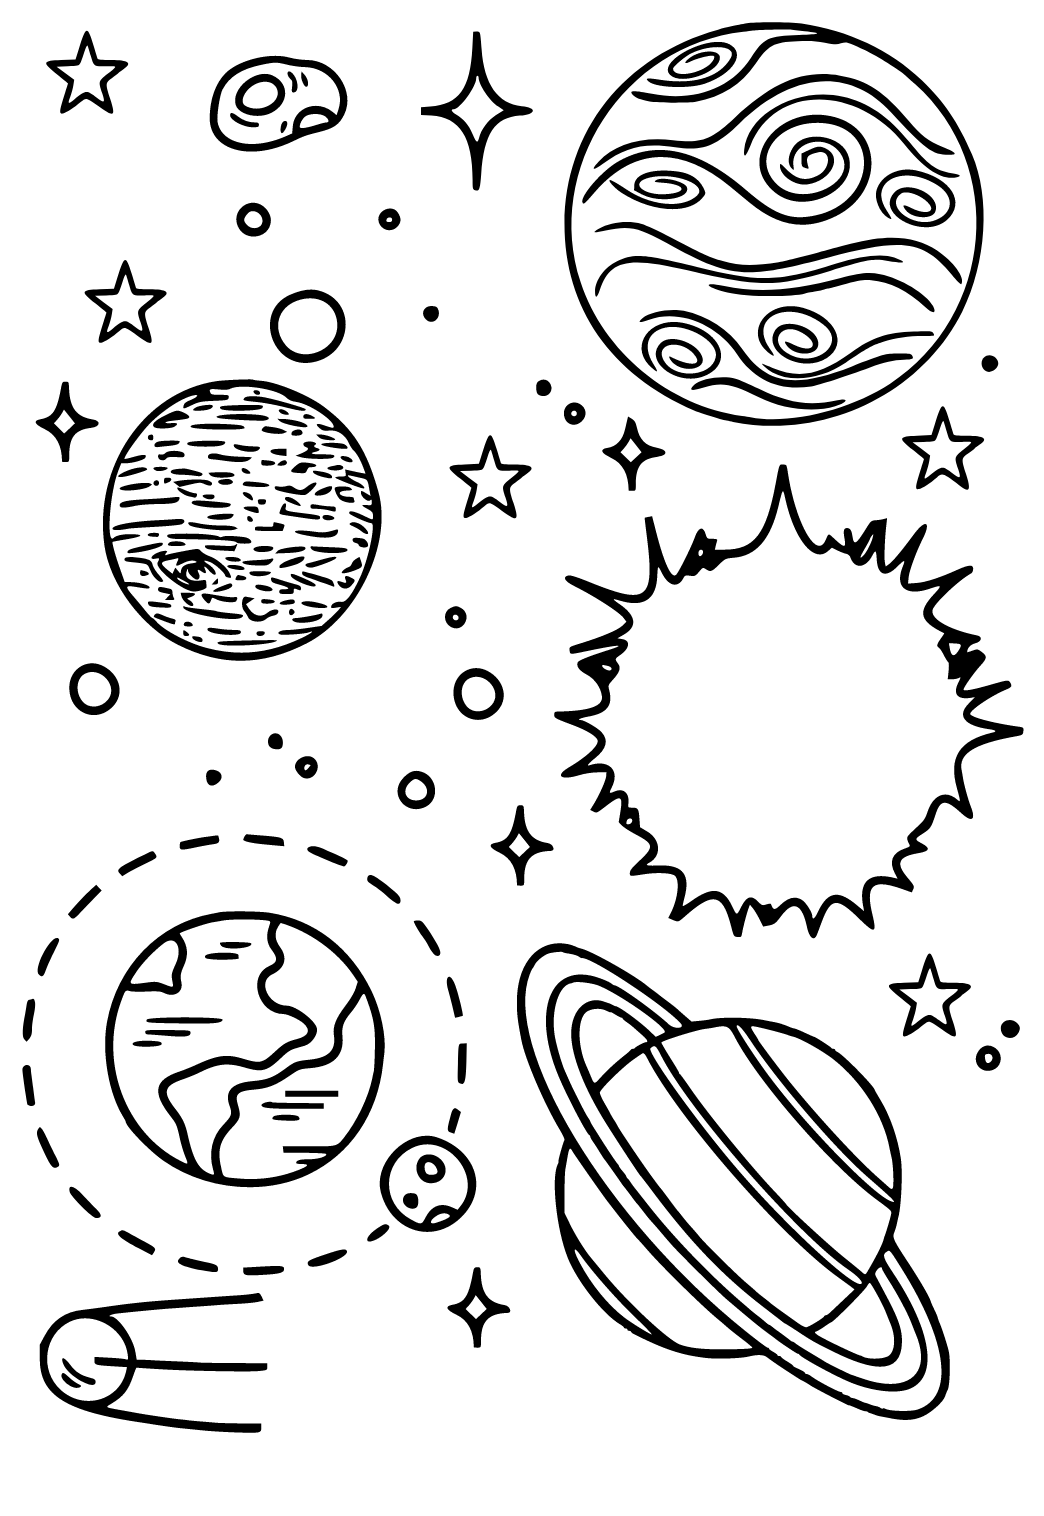 Saulės Sistema